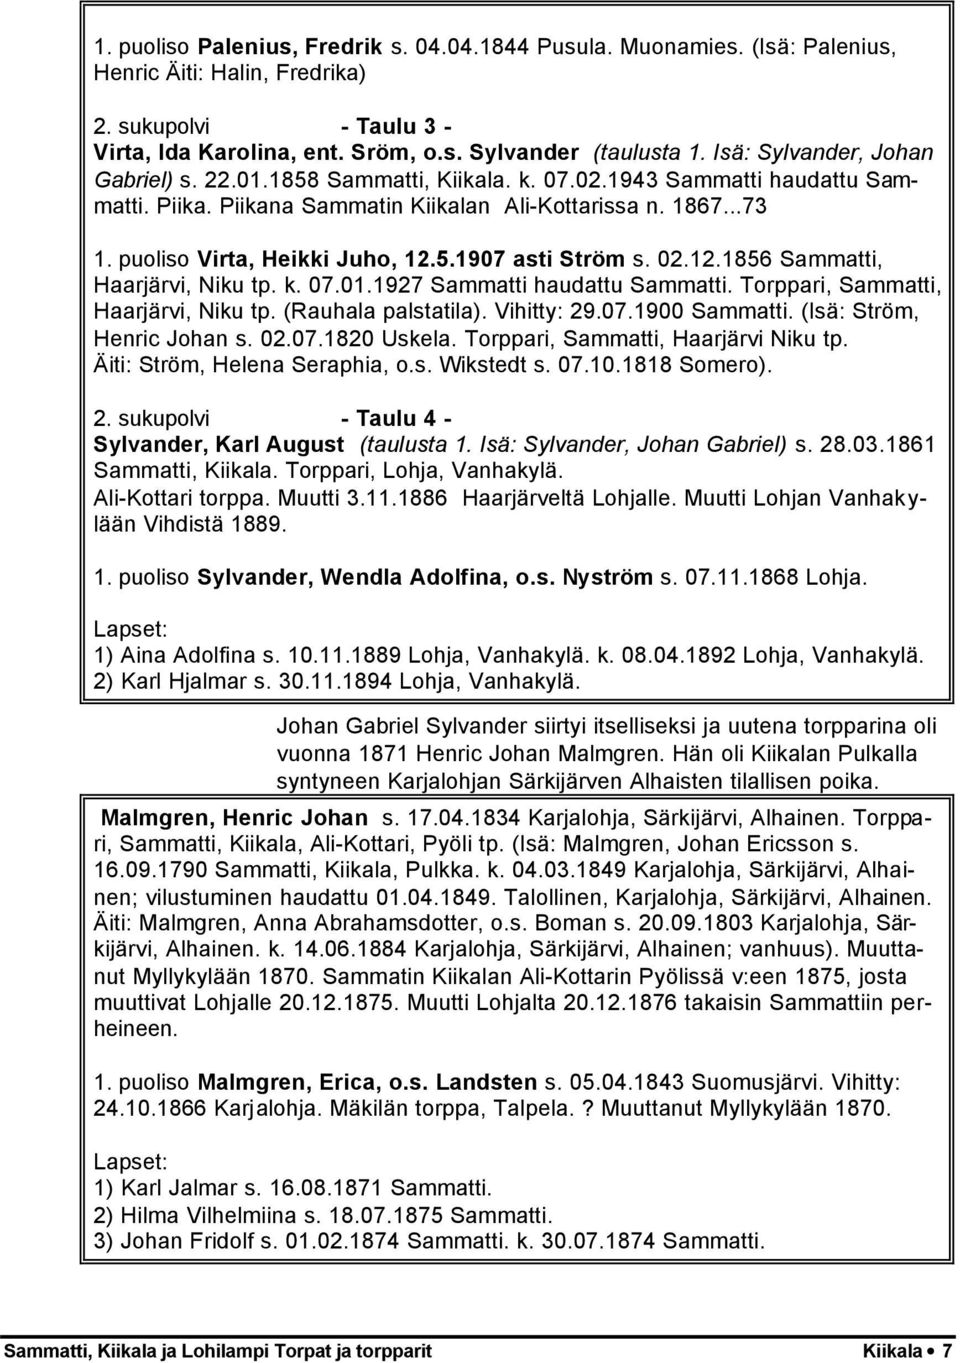 puoliso Virta, Heikki Juho, 12.5.1907 asti Ström s. 02.12.1856 Sammatti, Haarjärvi, Niku tp. k. 07.01.1927 Sammatti haudattu Sammatti. Torppari, Sammatti, Haarjärvi, Niku tp. (Rauhala palstatila).